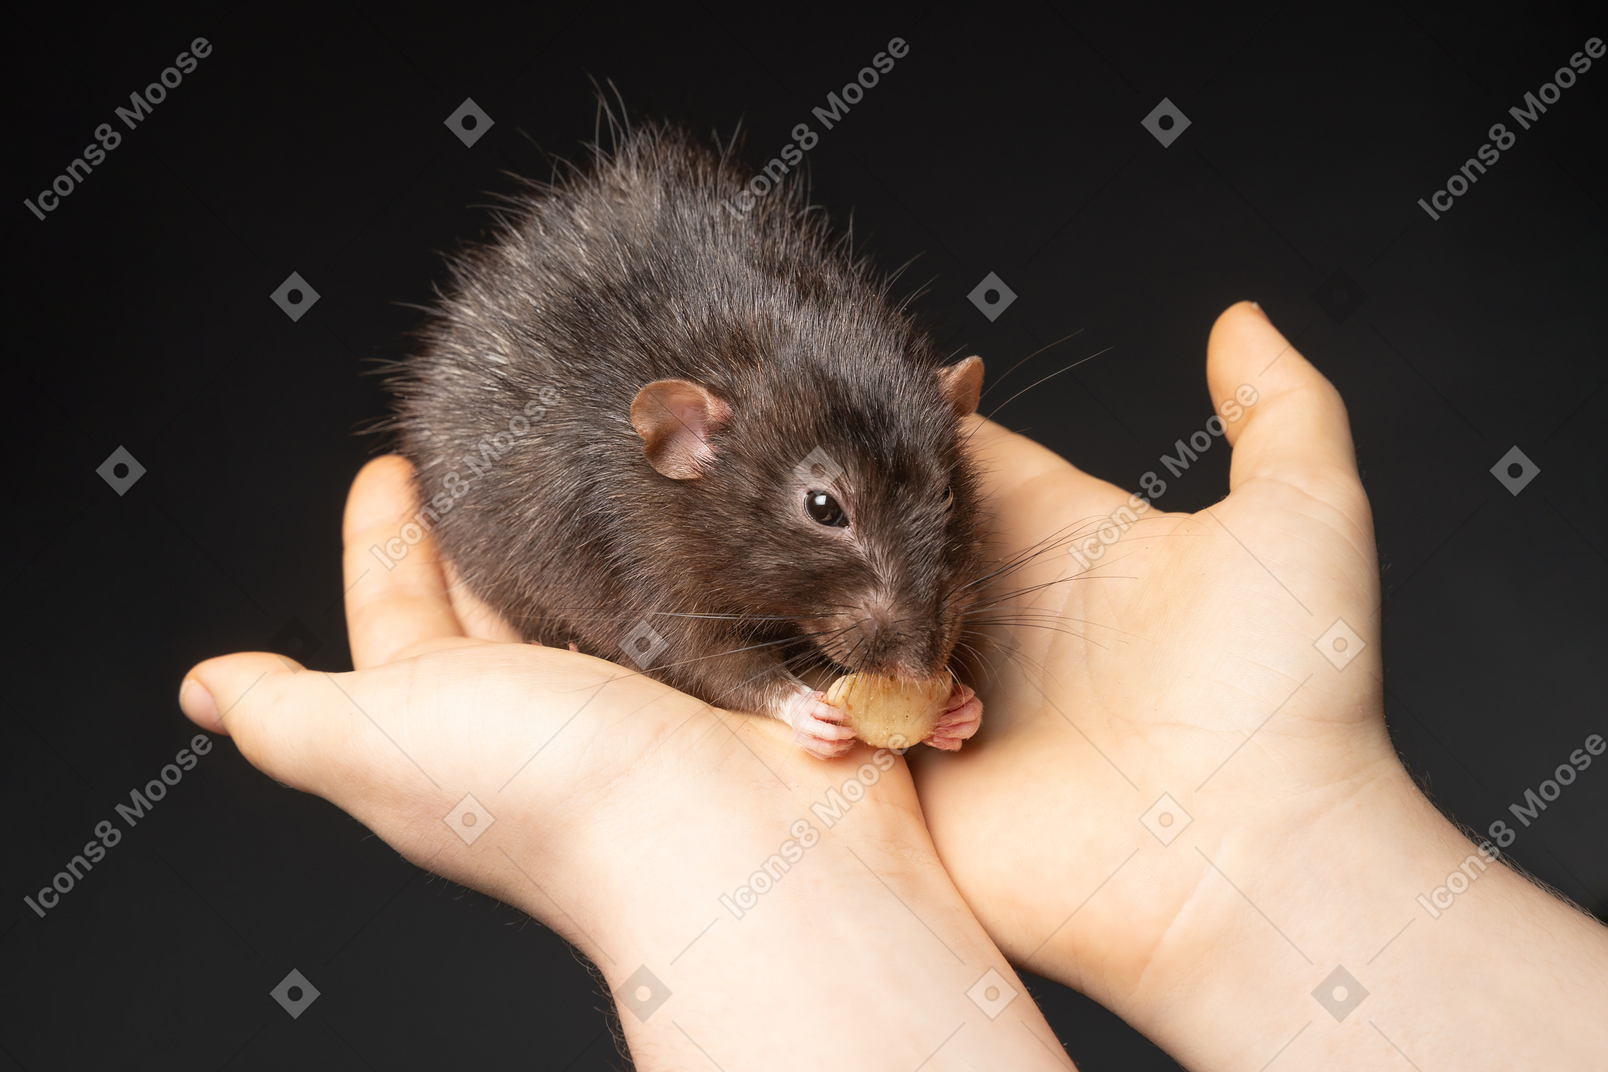 Милая коричневая мышь ест в руках человека